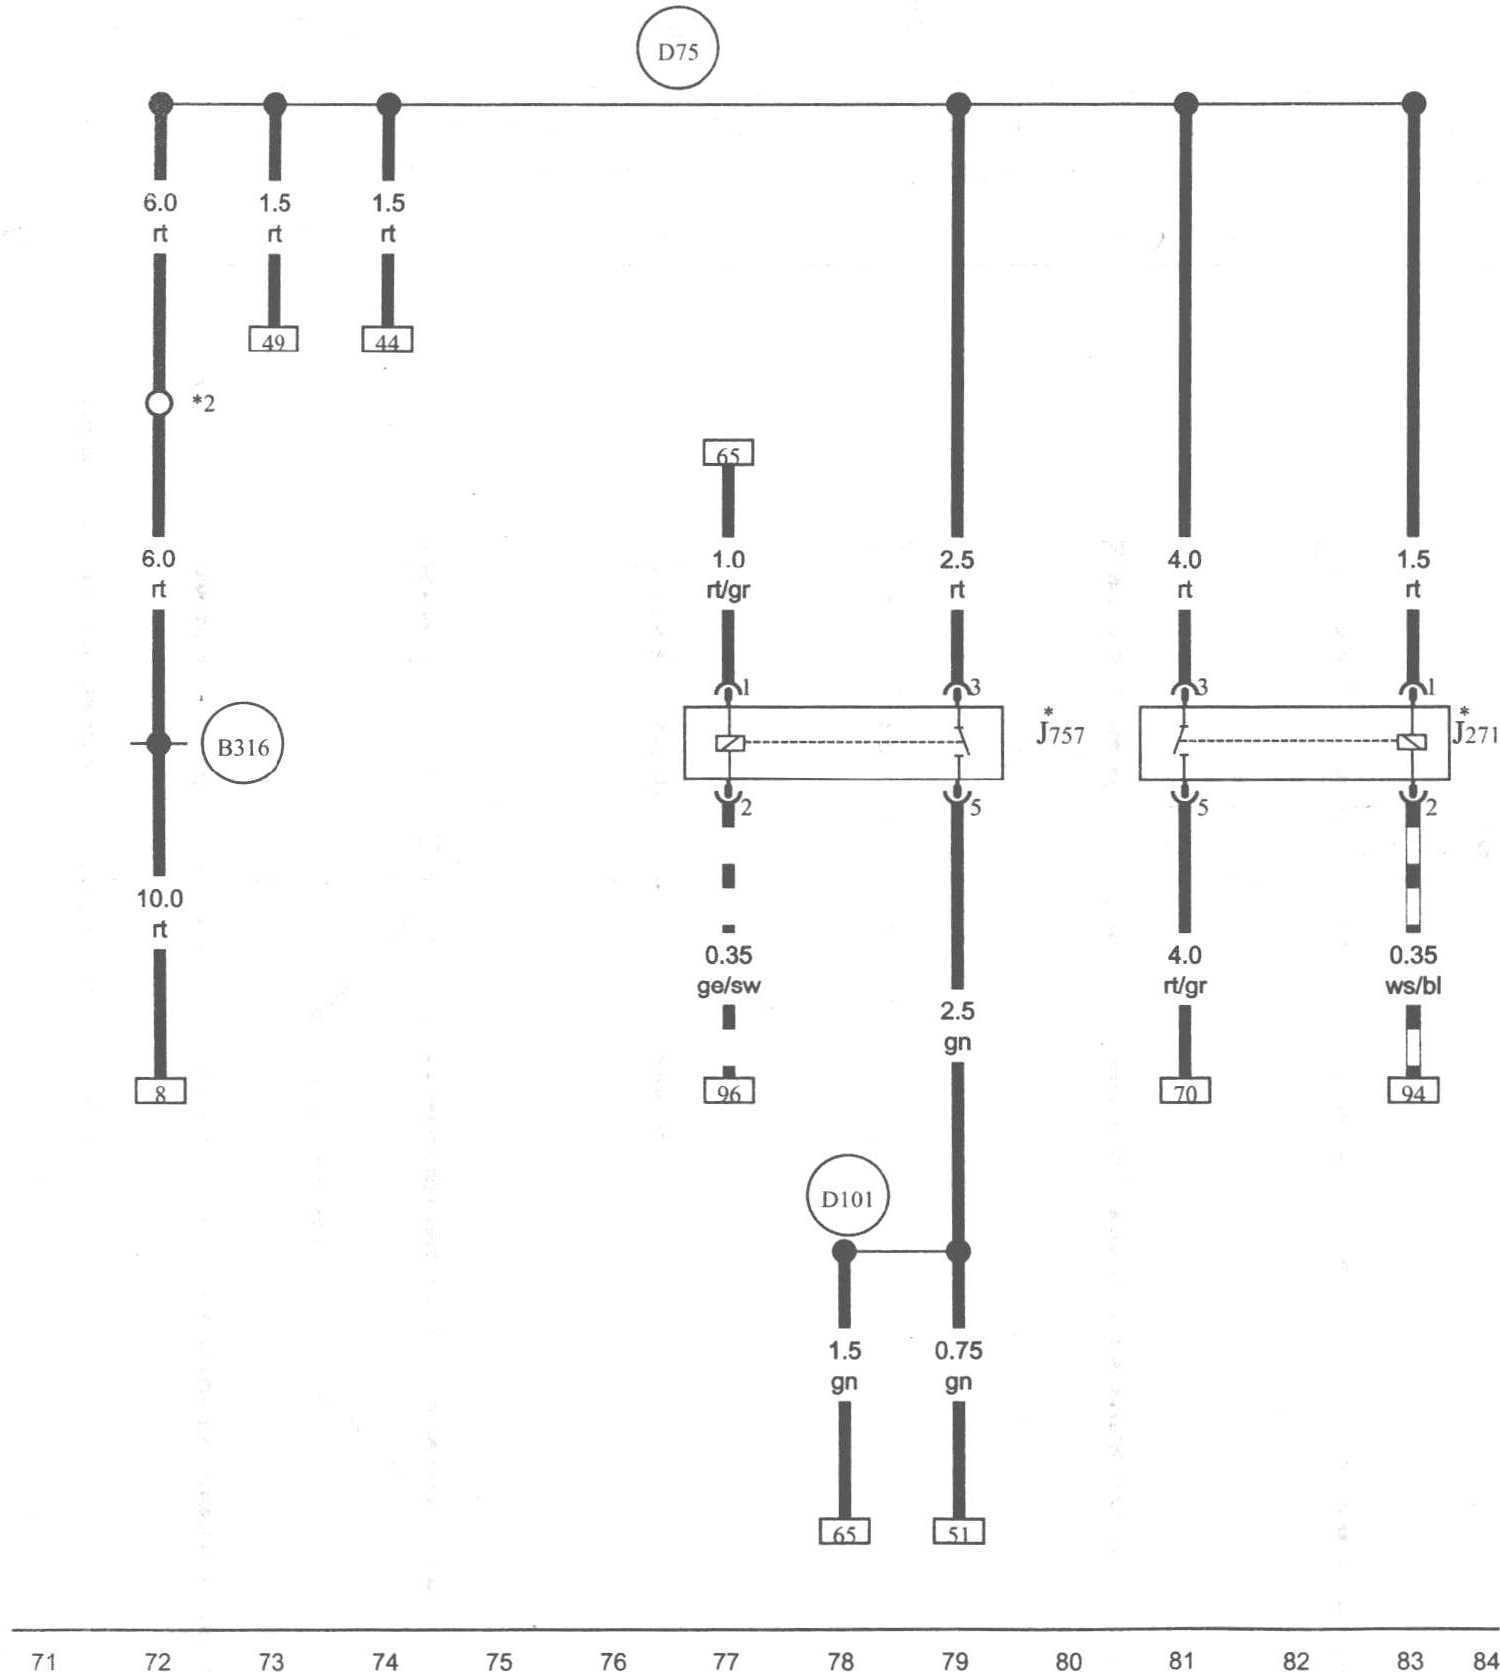 图1-1-34 主继电器、发动机部件供电继电器